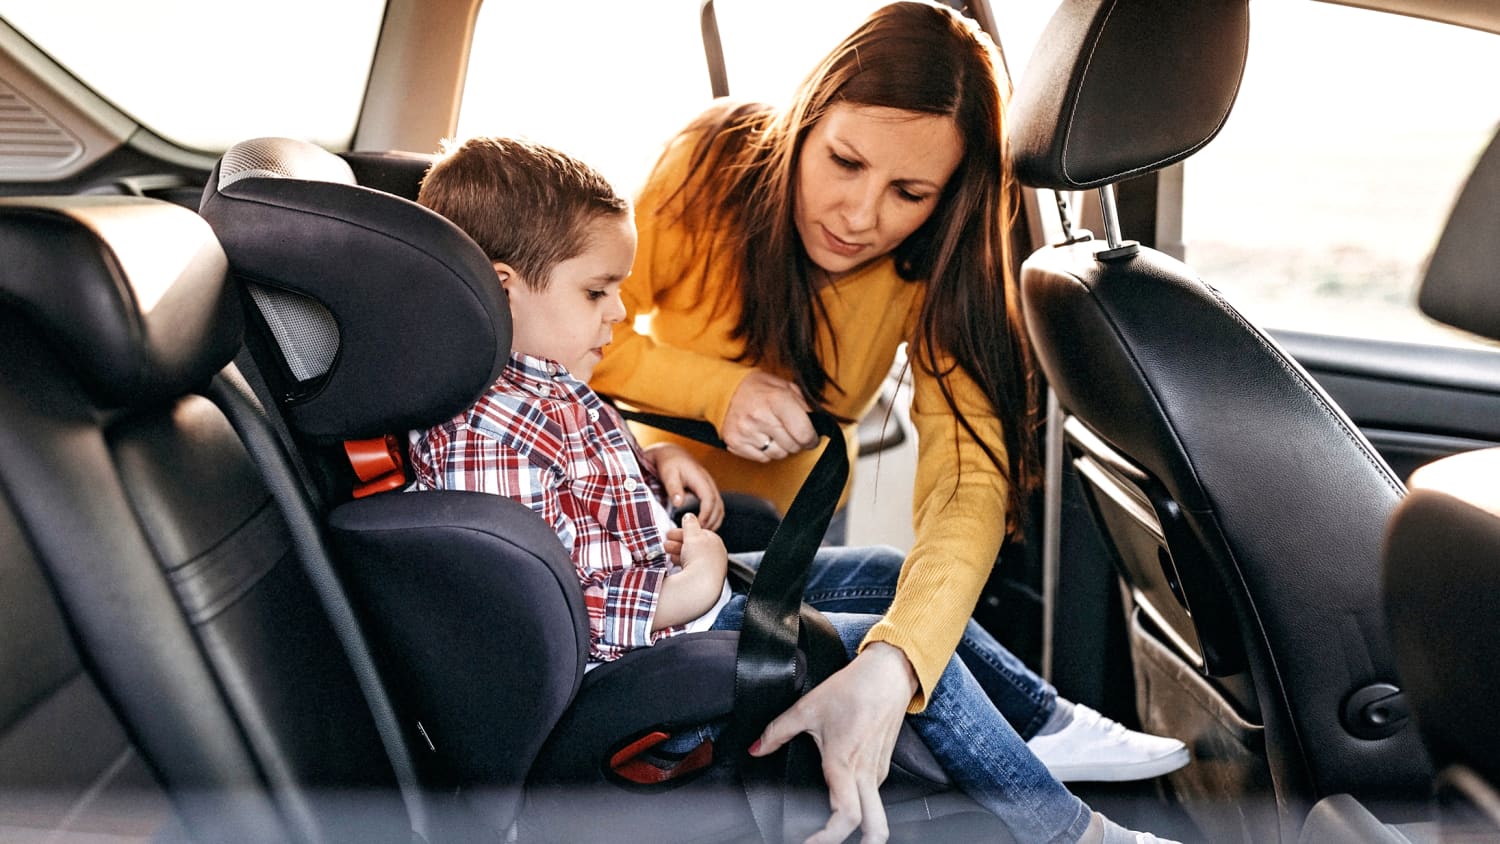 KBH310 Auto Kindersitz / Sitzerhöhung (grau/schwarz) für Kinder